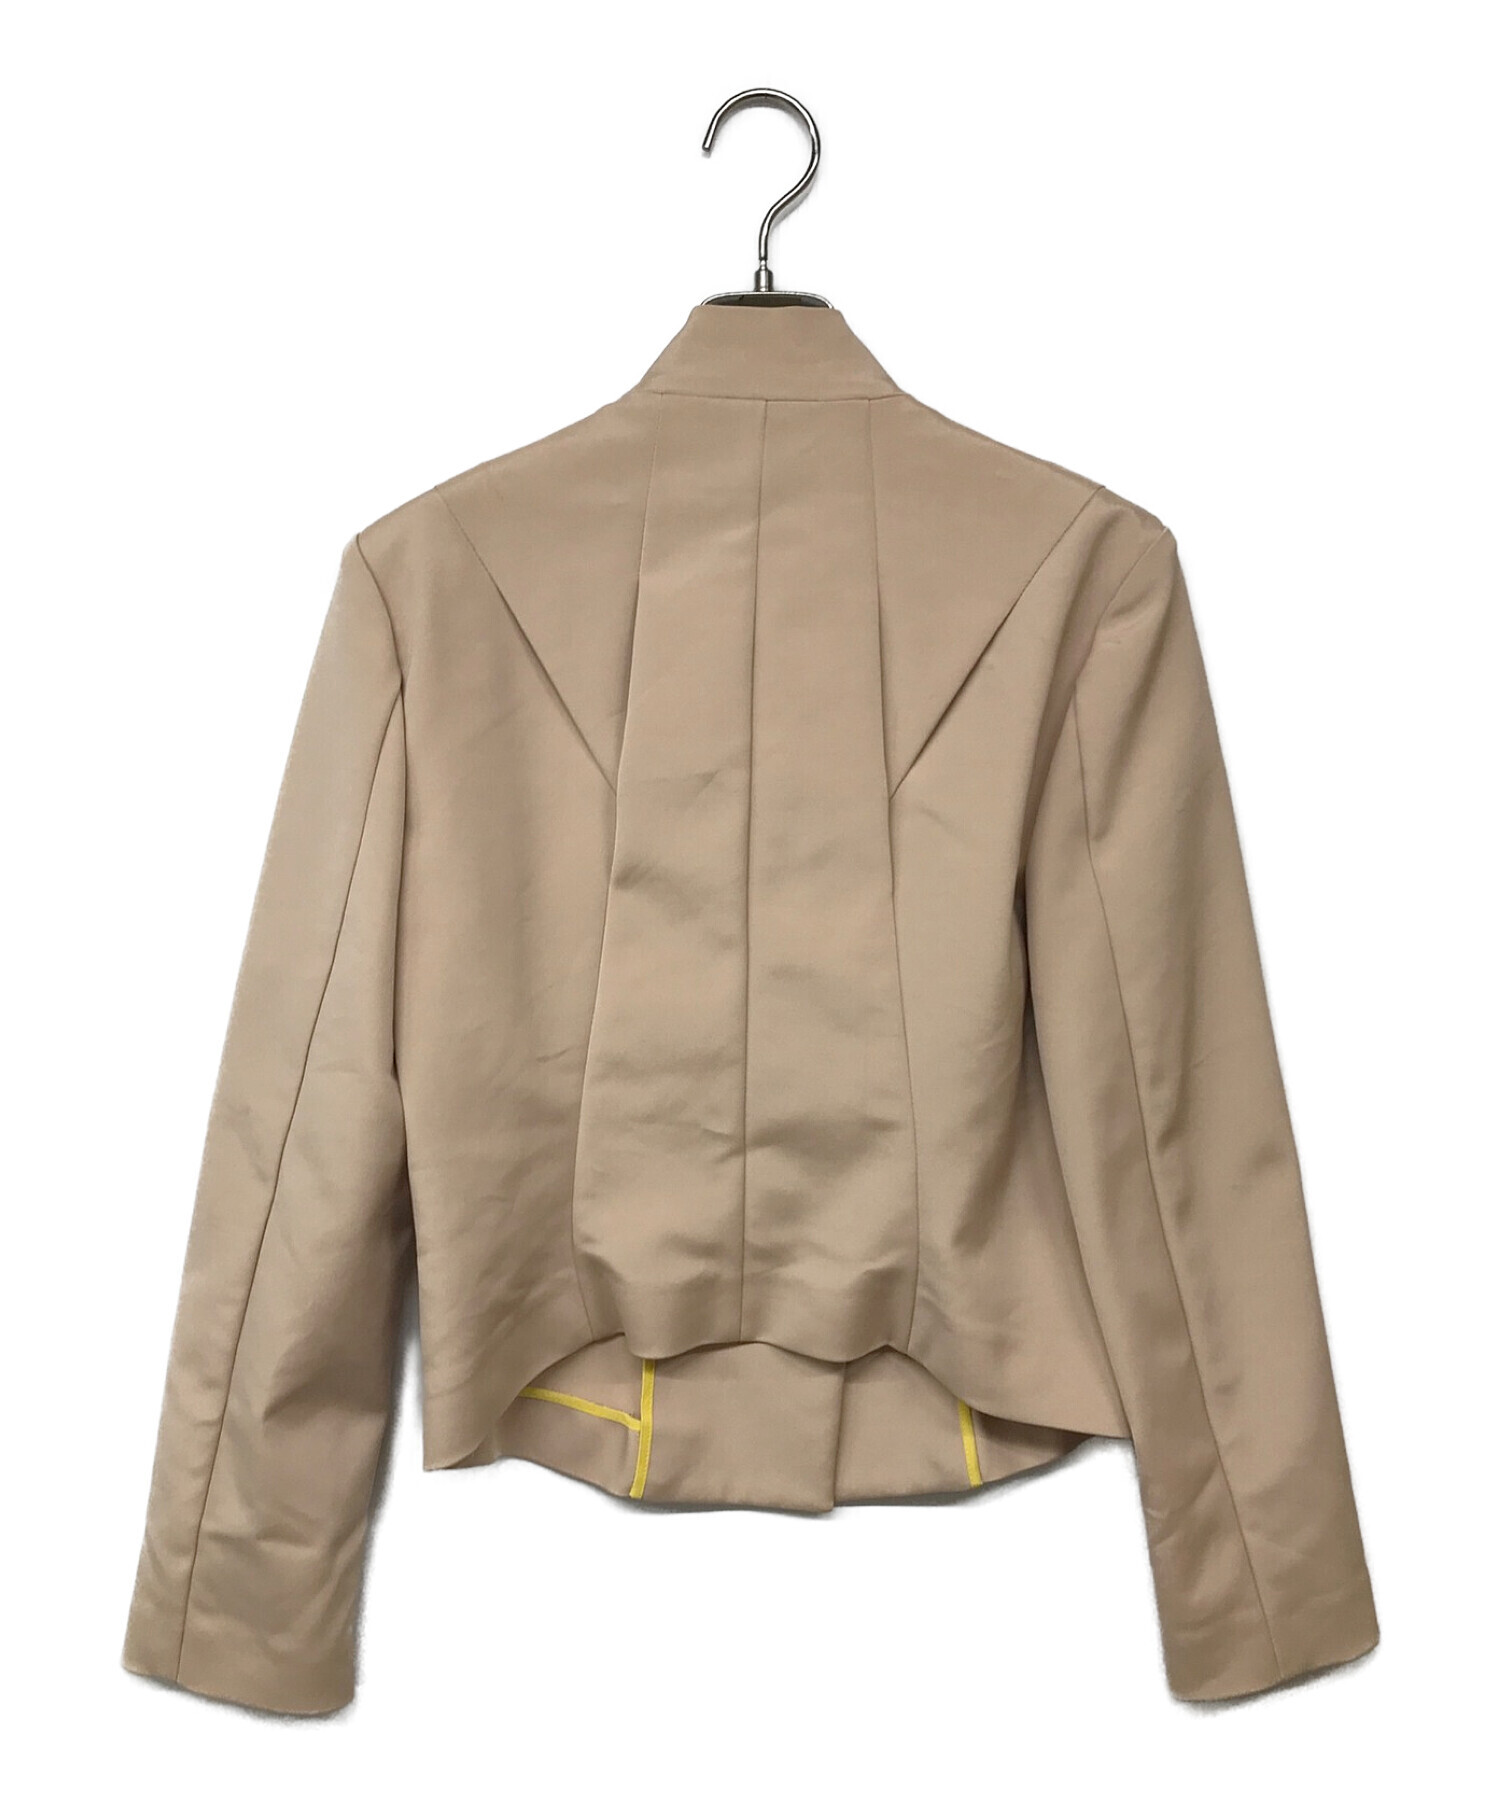 メンズISSEY MIYAKE (イッセイミヤケ) 2Bジャケット ベージュ サイズ:2 テーラードジャケット